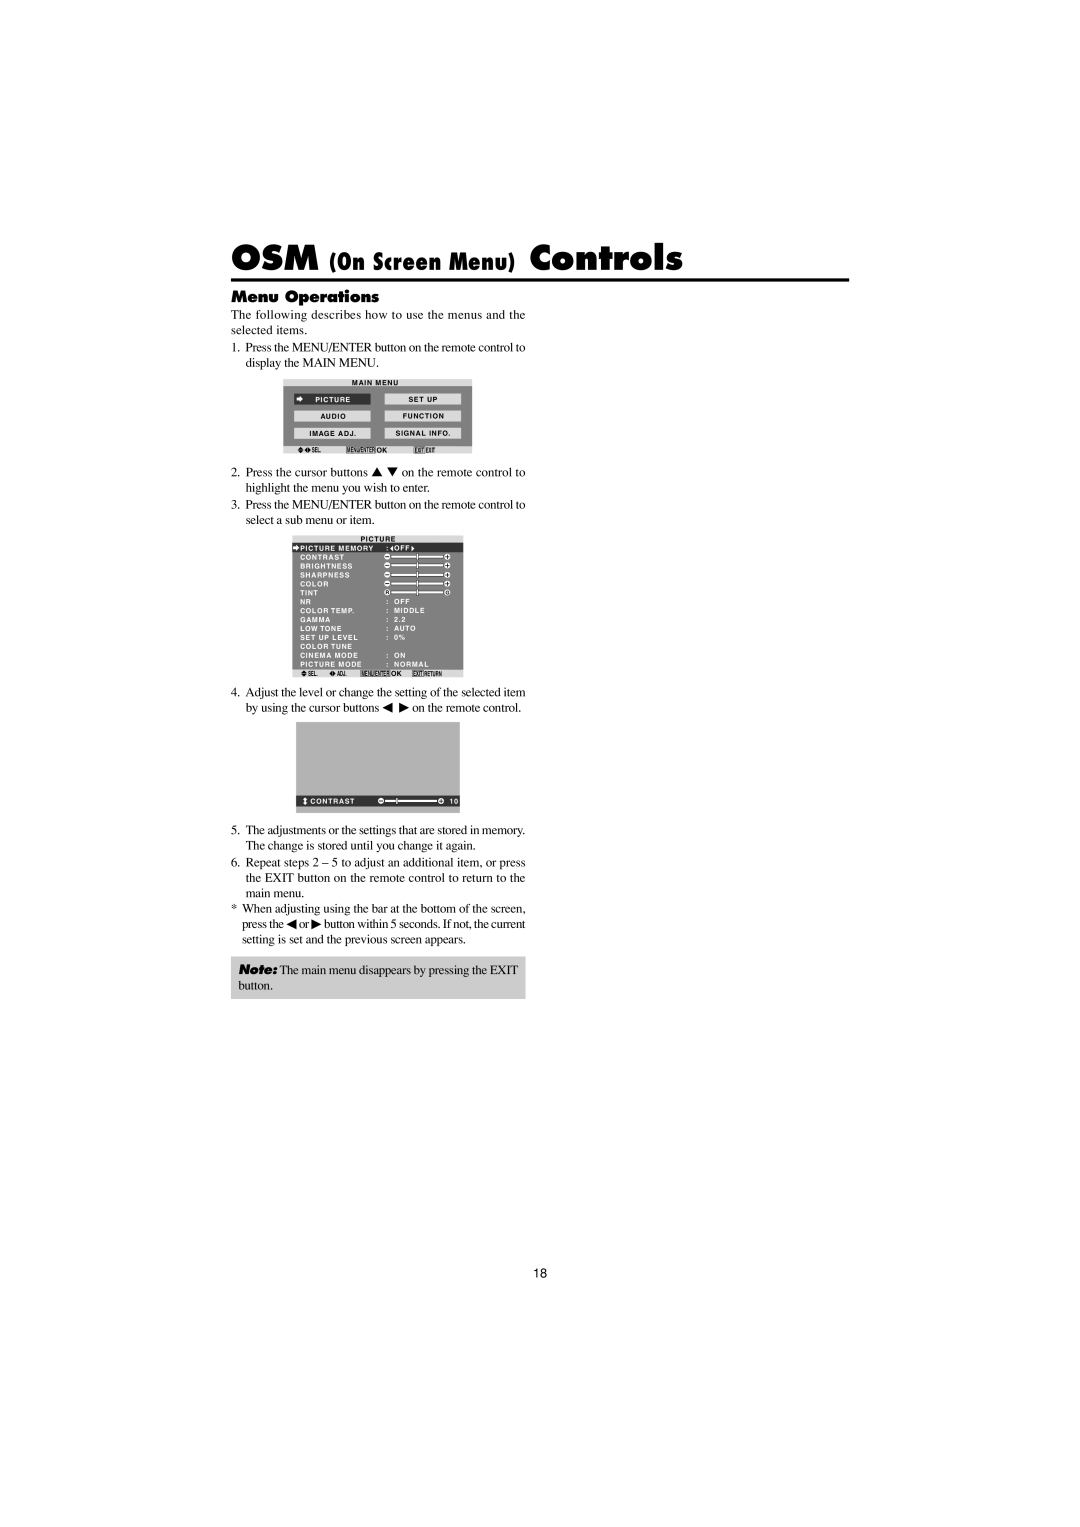 Marantz PD4230V manual OSM On Screen Menu Controls, Menu Operations 